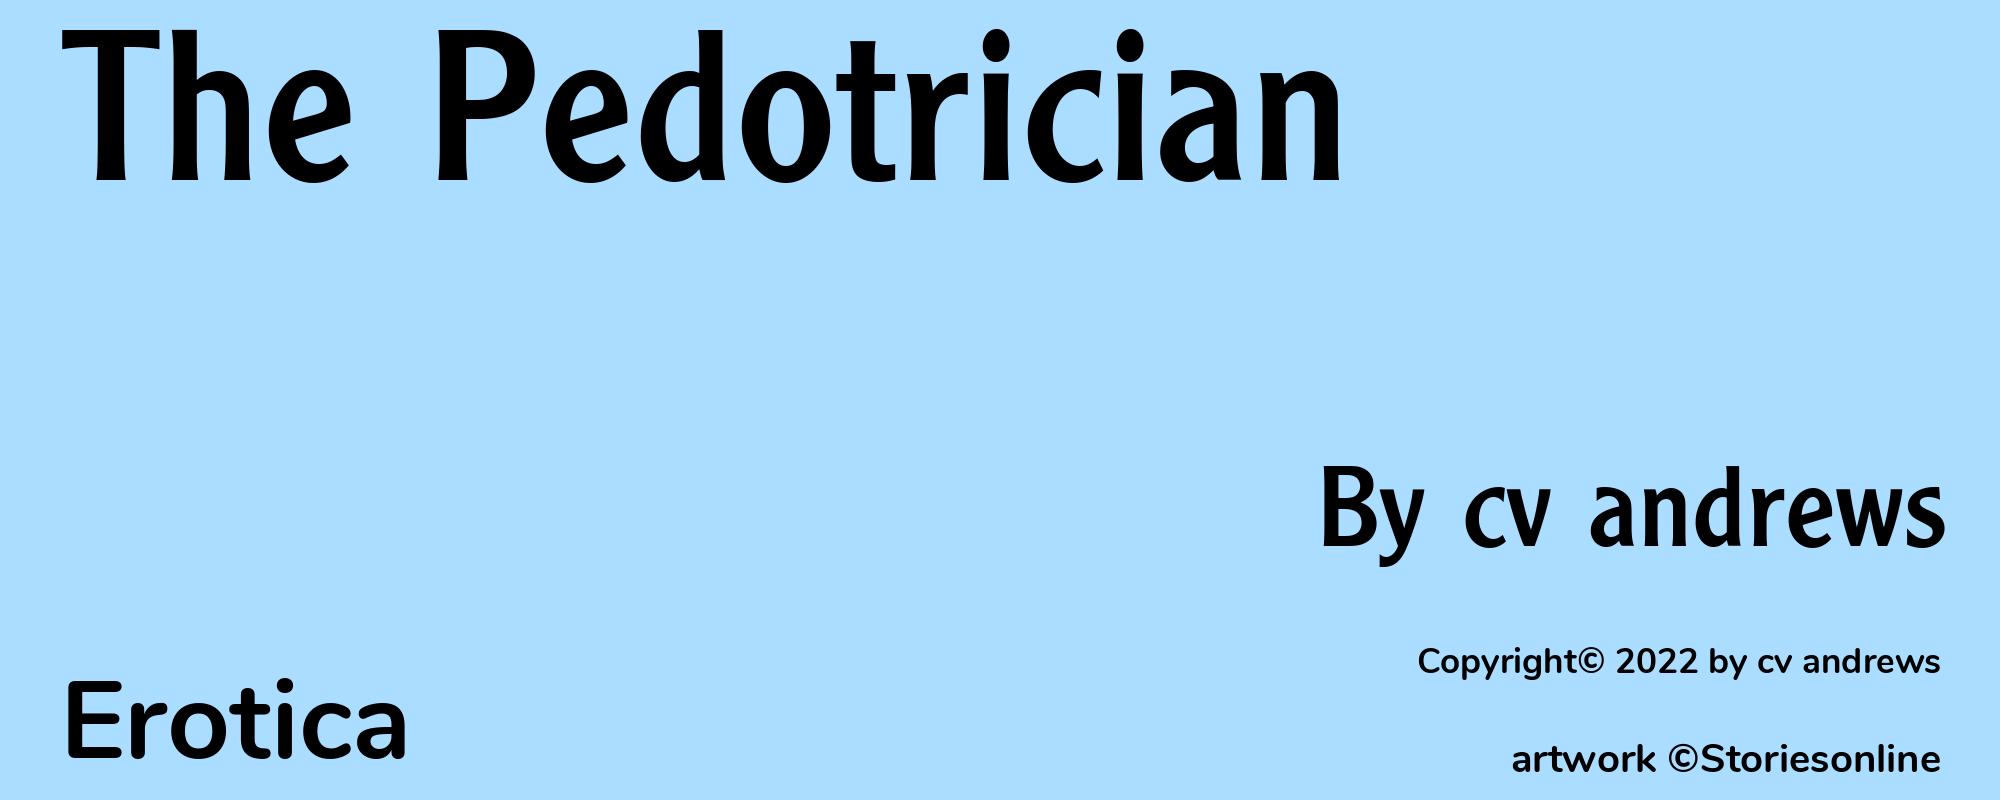 The Pedotrician - Cover